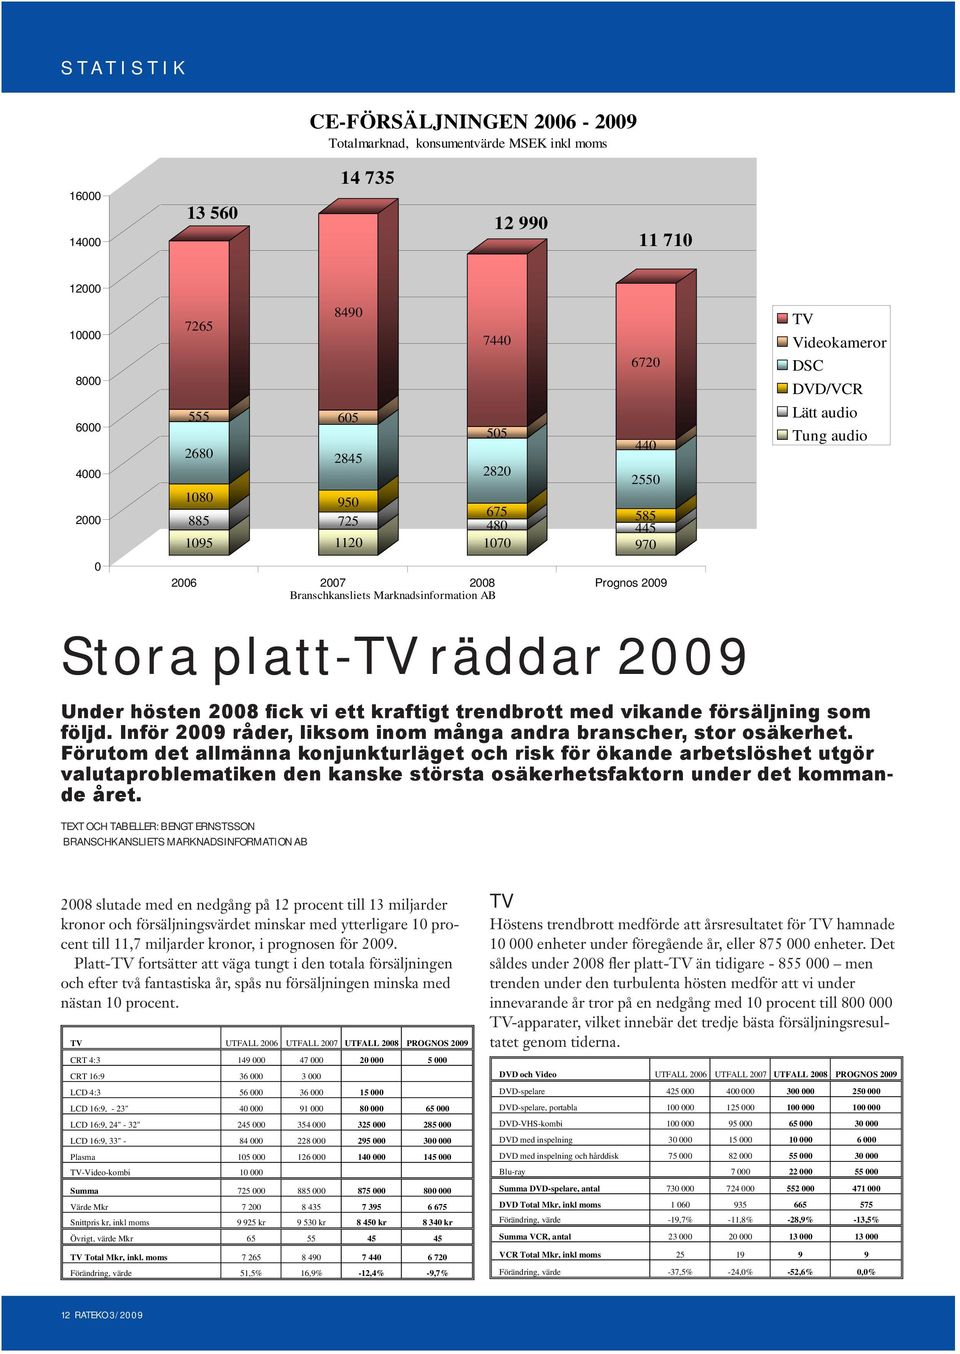 platt-tv räddar 2009 Under hösten 2008 fick vi ett kraftigt trendbrott med vikande försäljning som följd. Inför 2009 råder, liksom inom många andra branscher, stor osäkerhet.